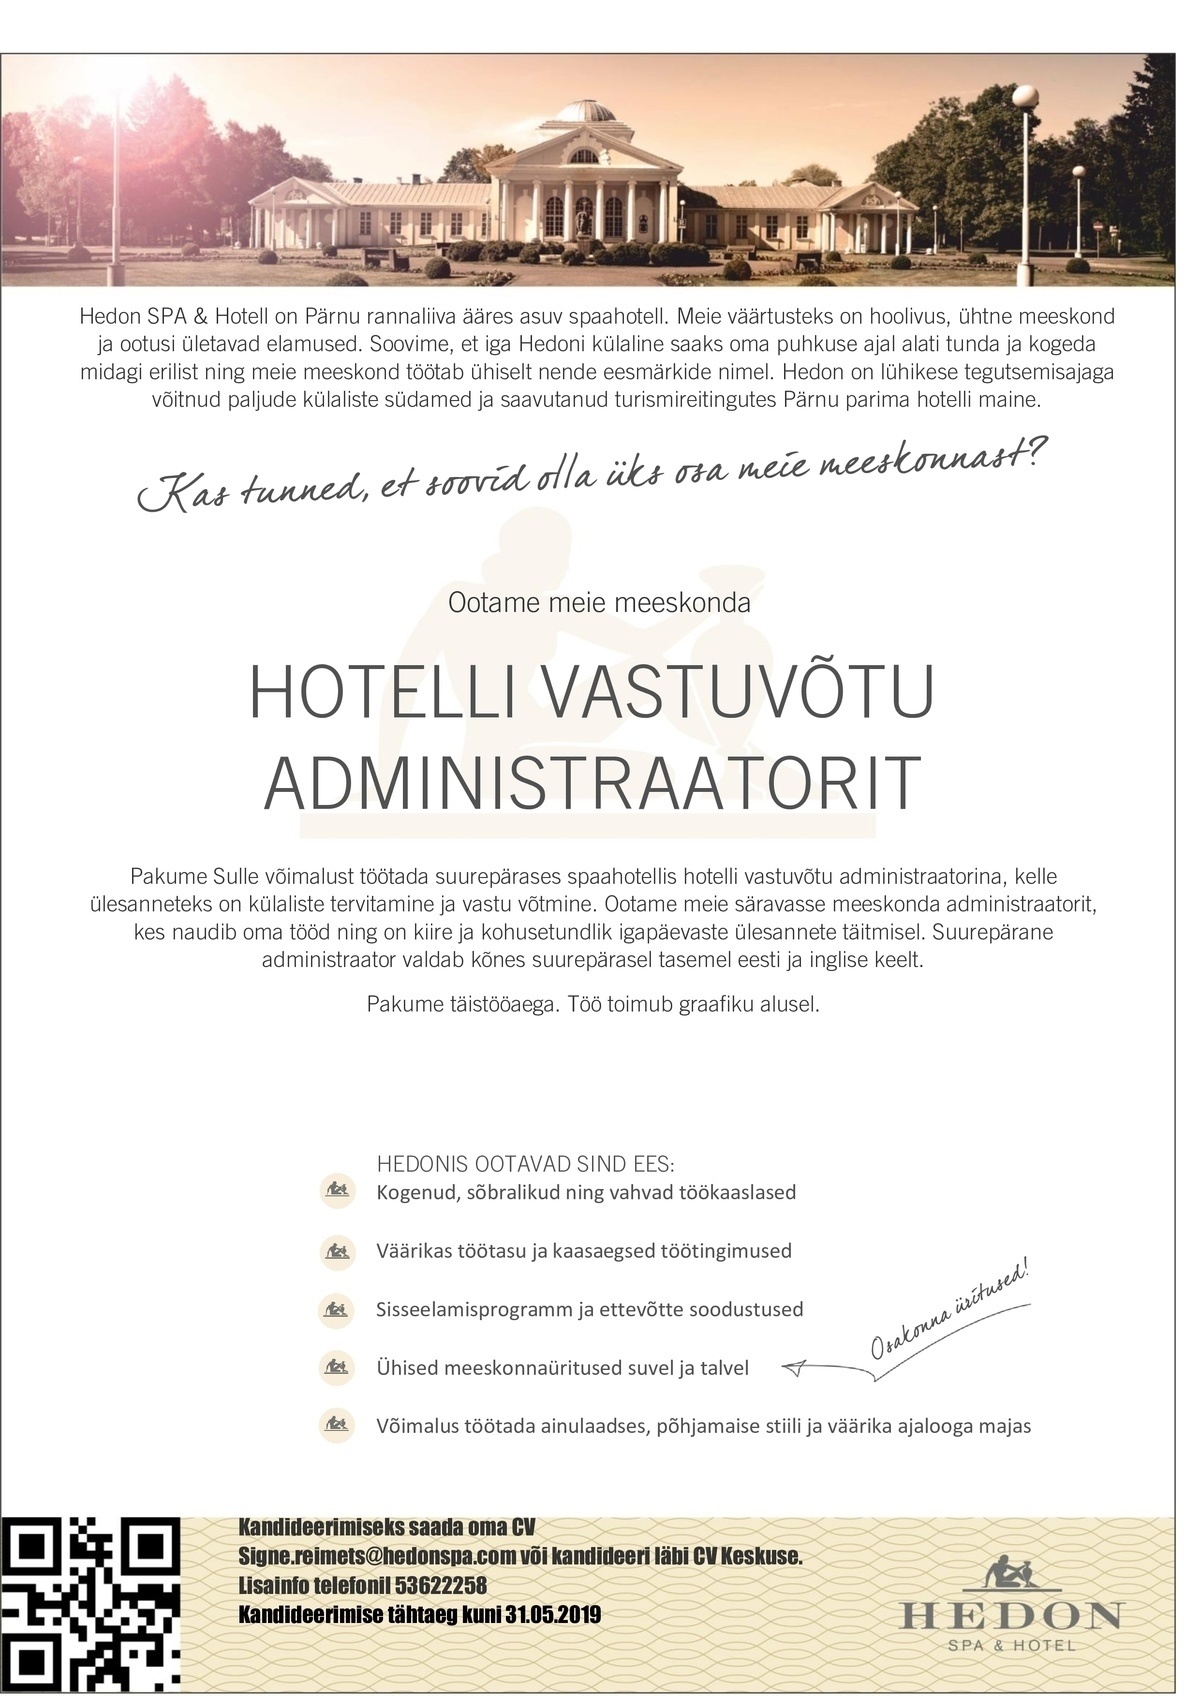 Supeluse Hotell OÜ Hedon SPA & HOTEL Hotelli vastuvõtu administraator